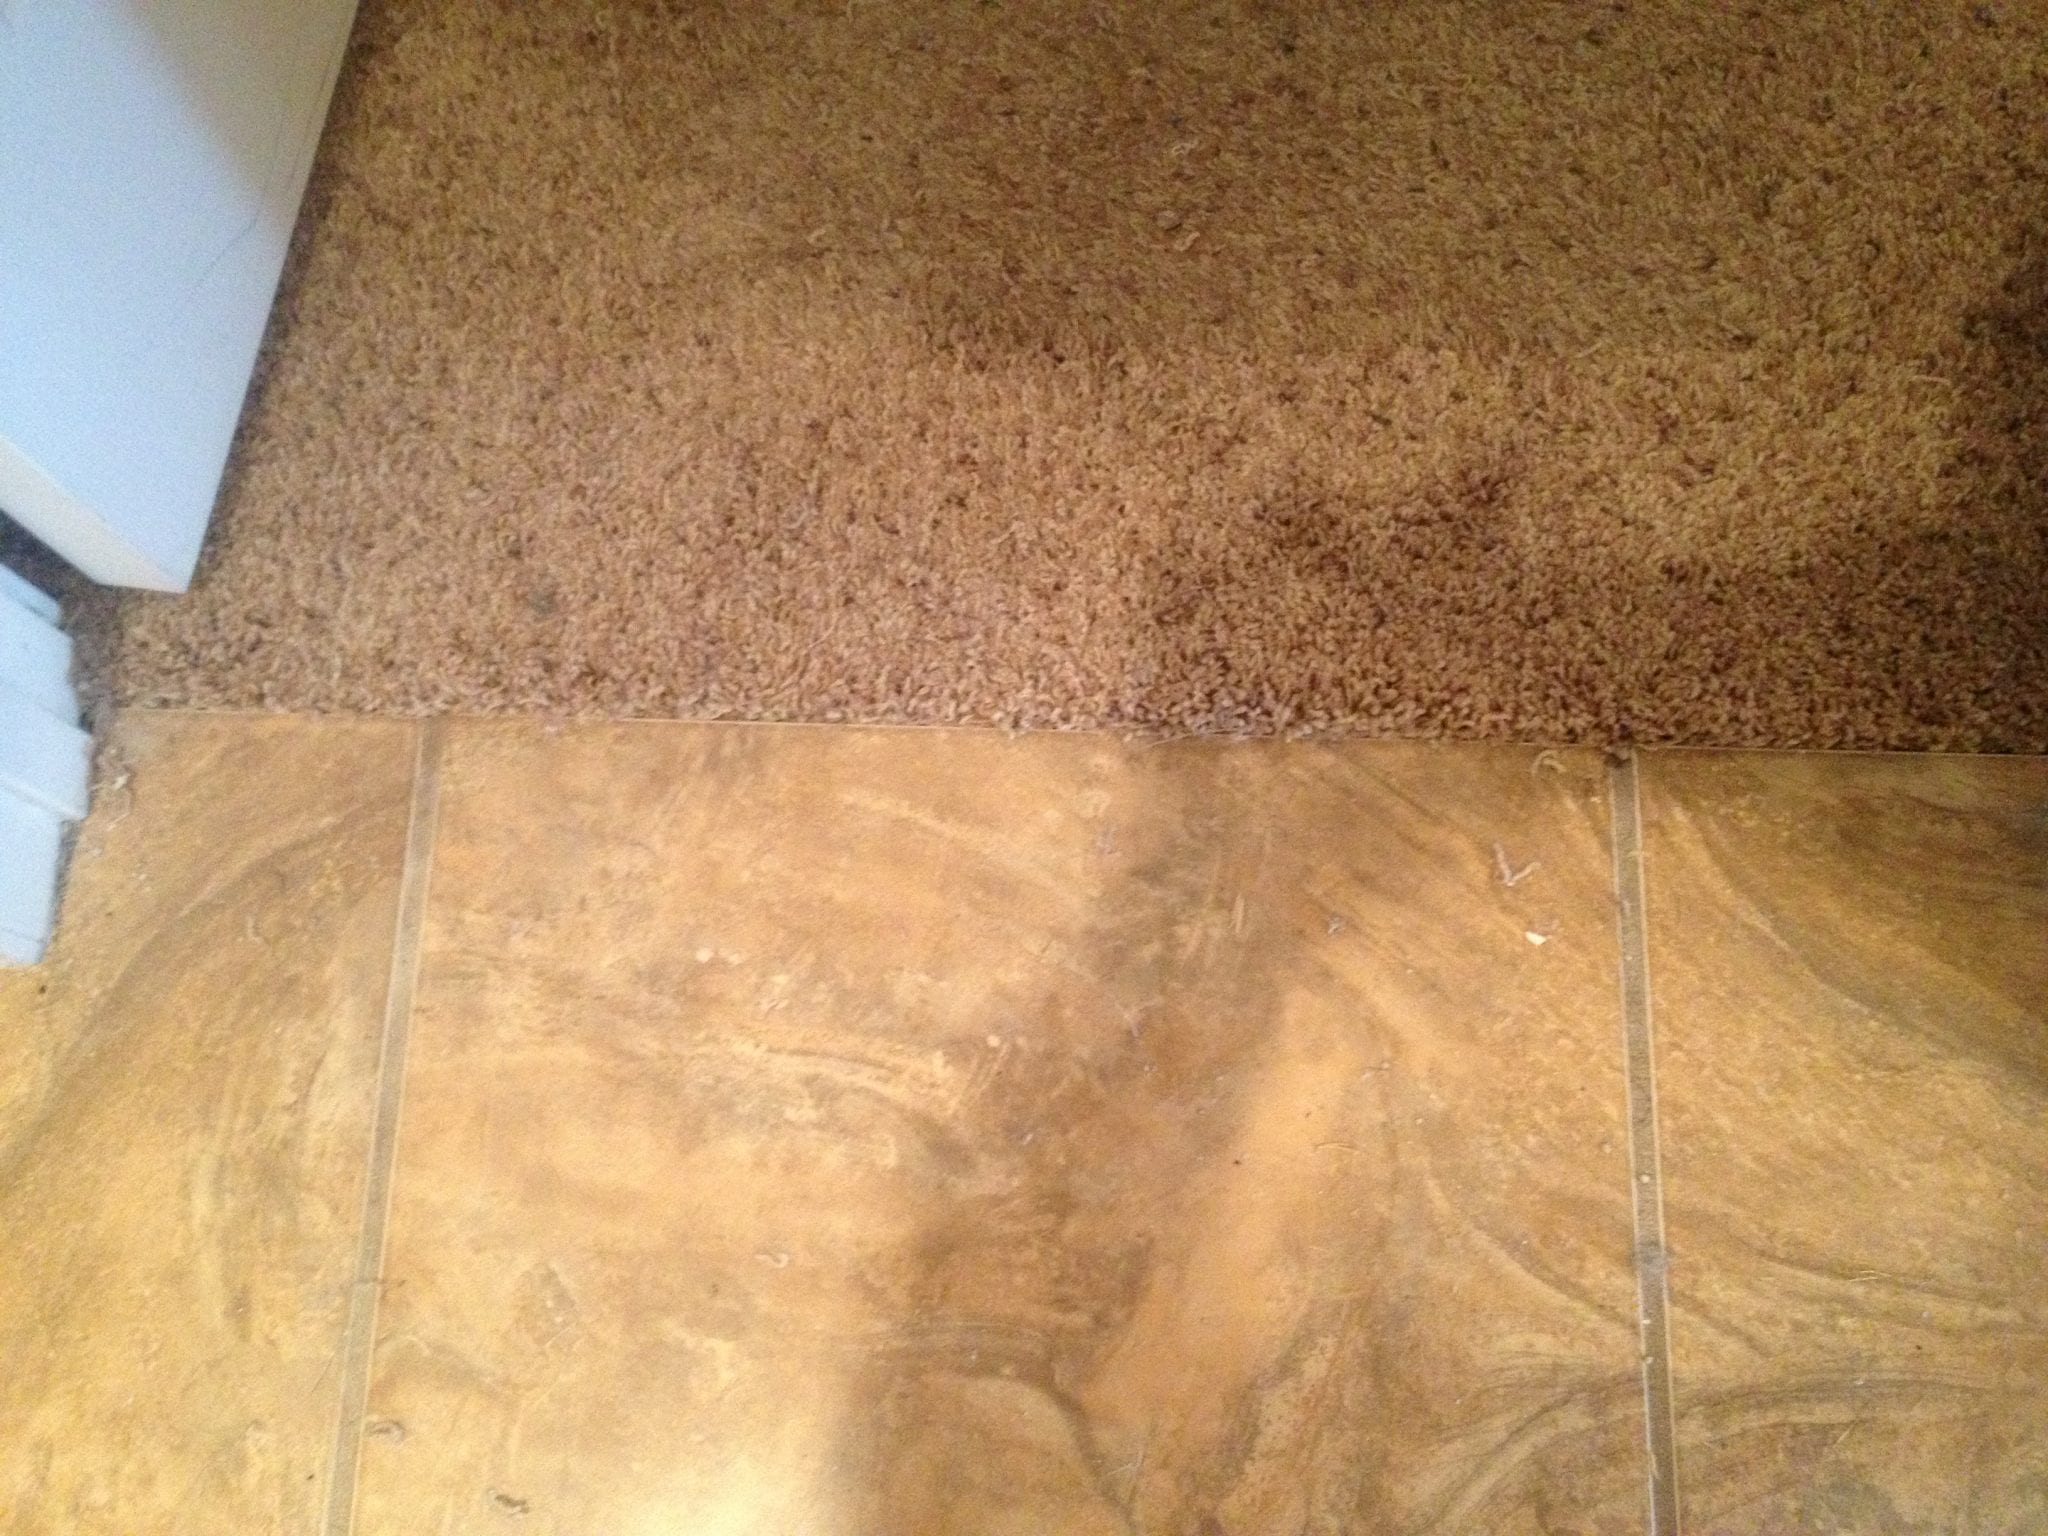 Scottsdale Pet Damaged Carpet Repair in a Doorway Results